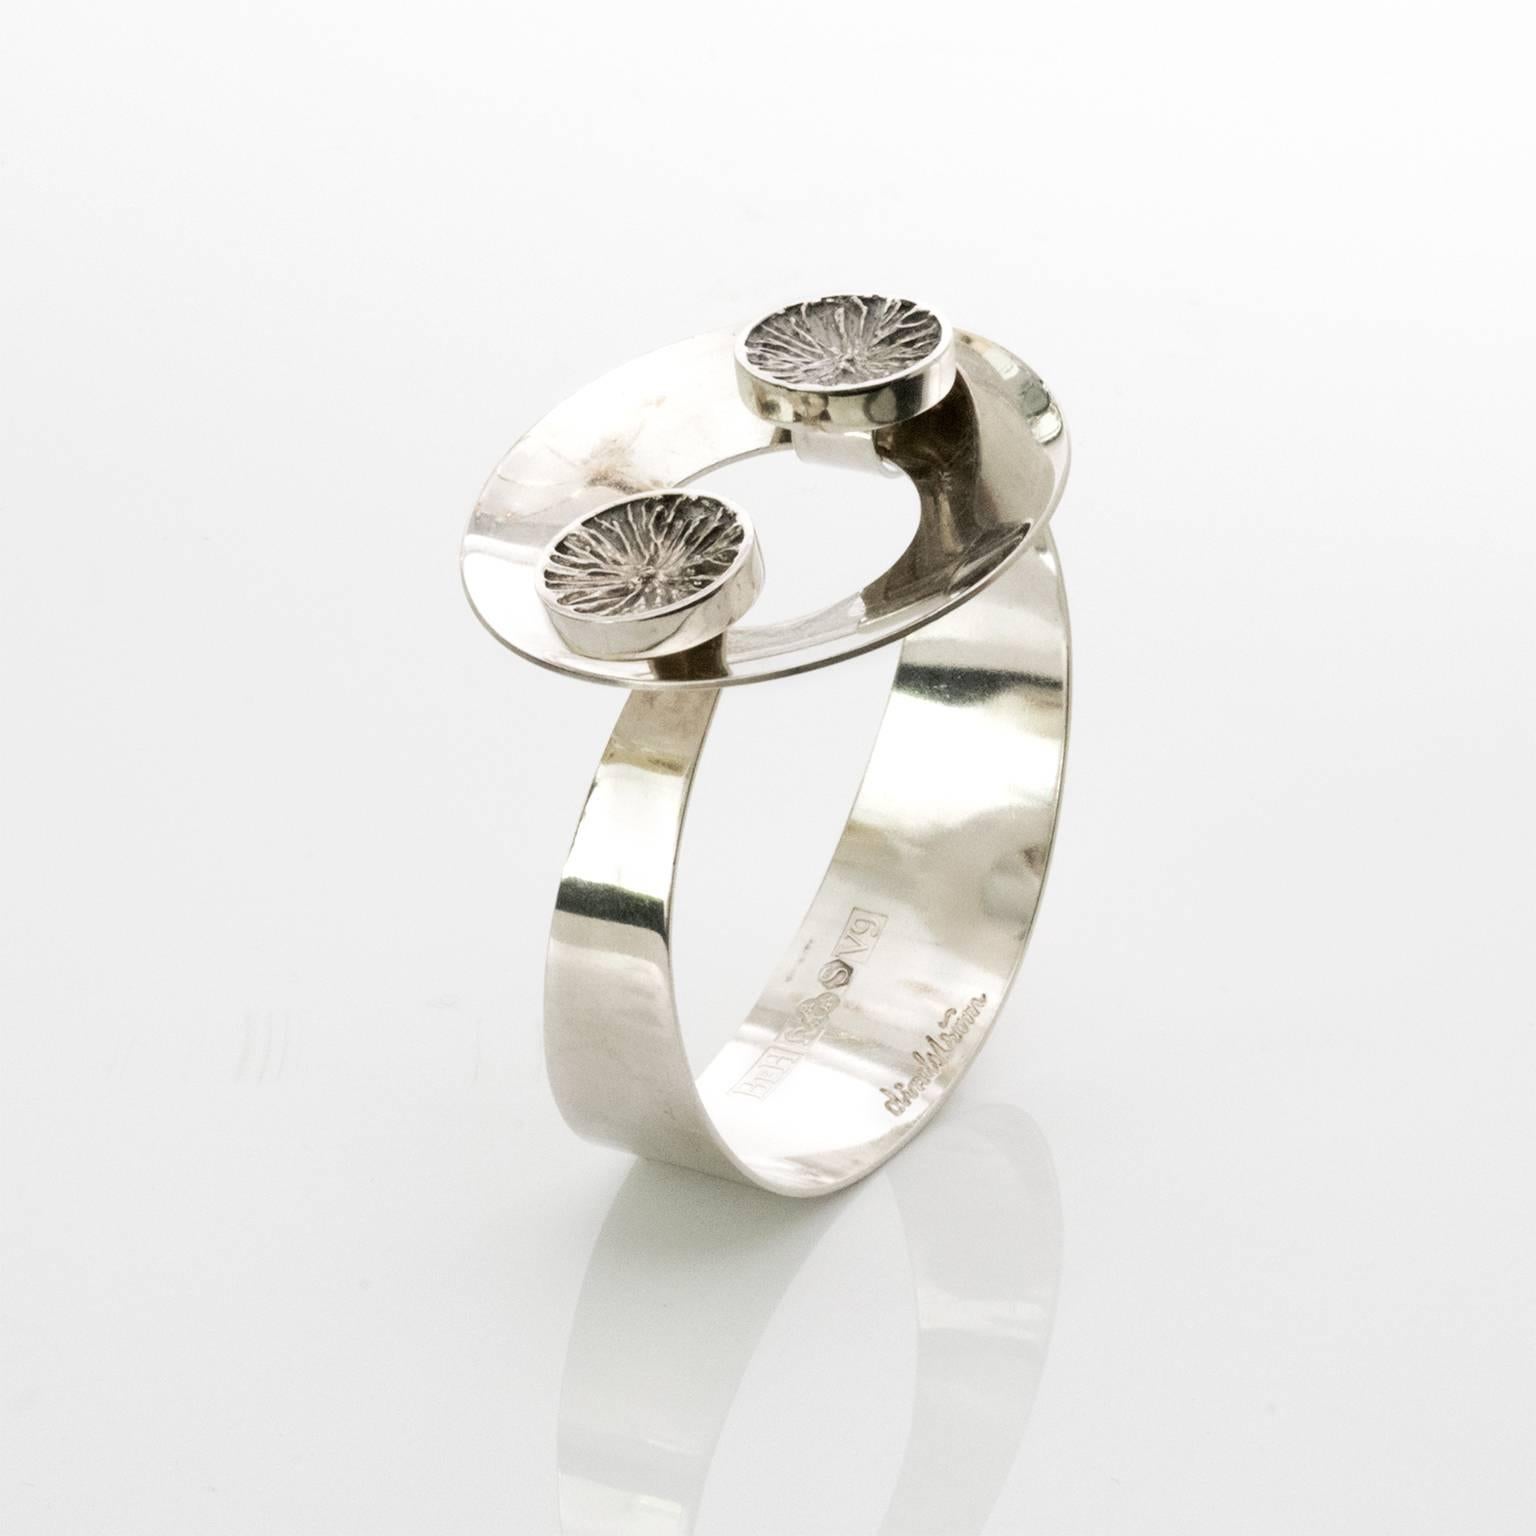 Scandinavian modern silver bracelet with ring clasp. Designed by Ake Lindstrom for Bengt Hallberg, 1971, Sweden.